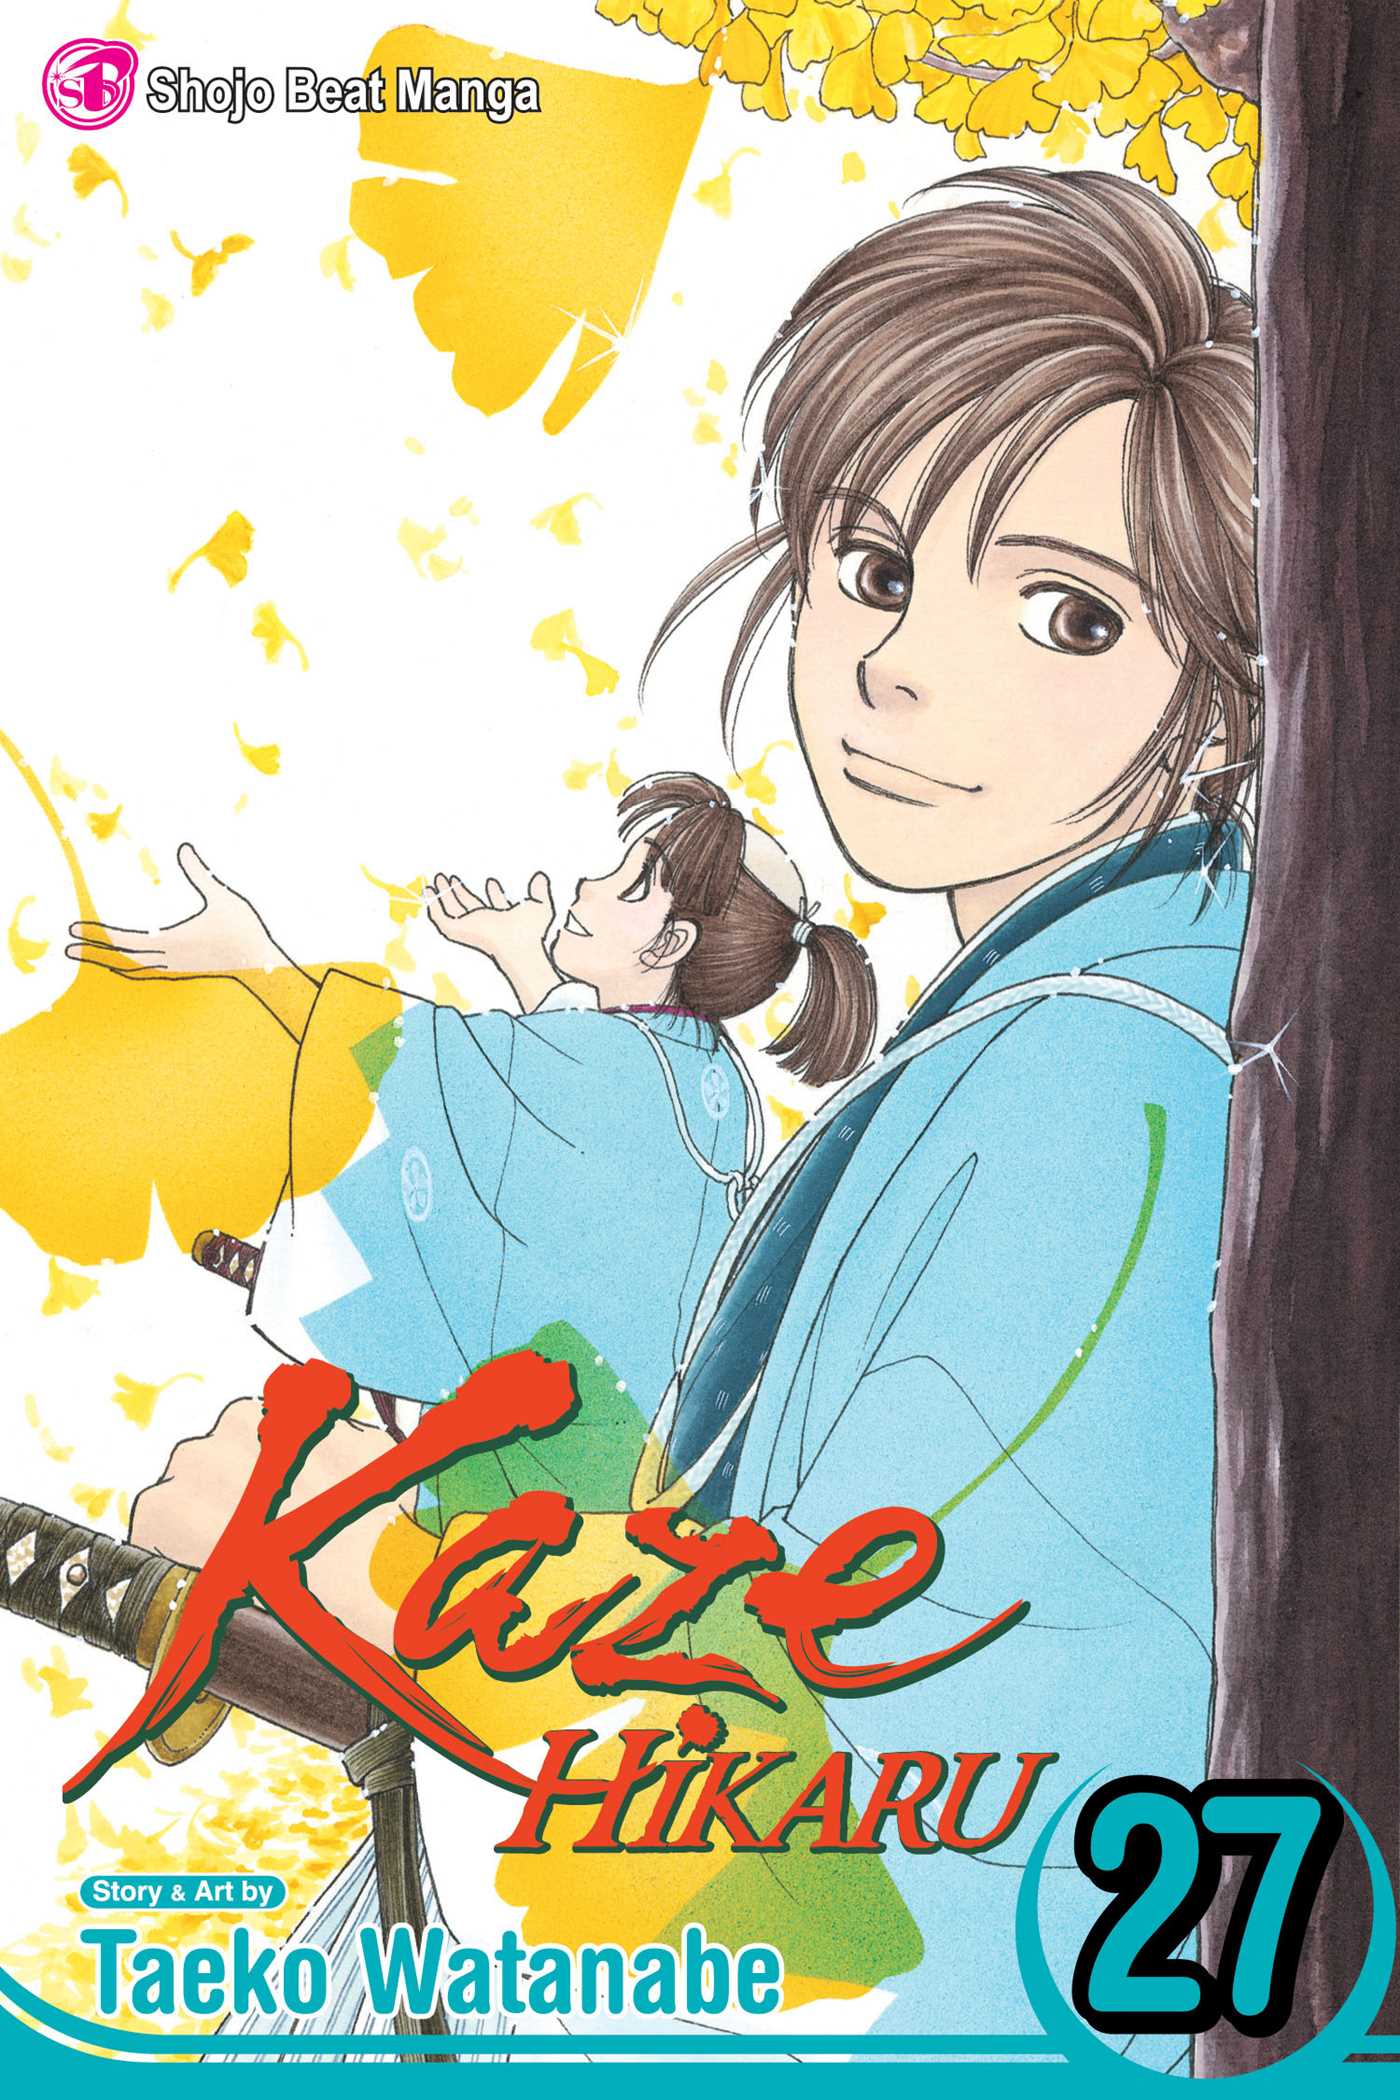 Kaze Hikaru Manga Volume 27